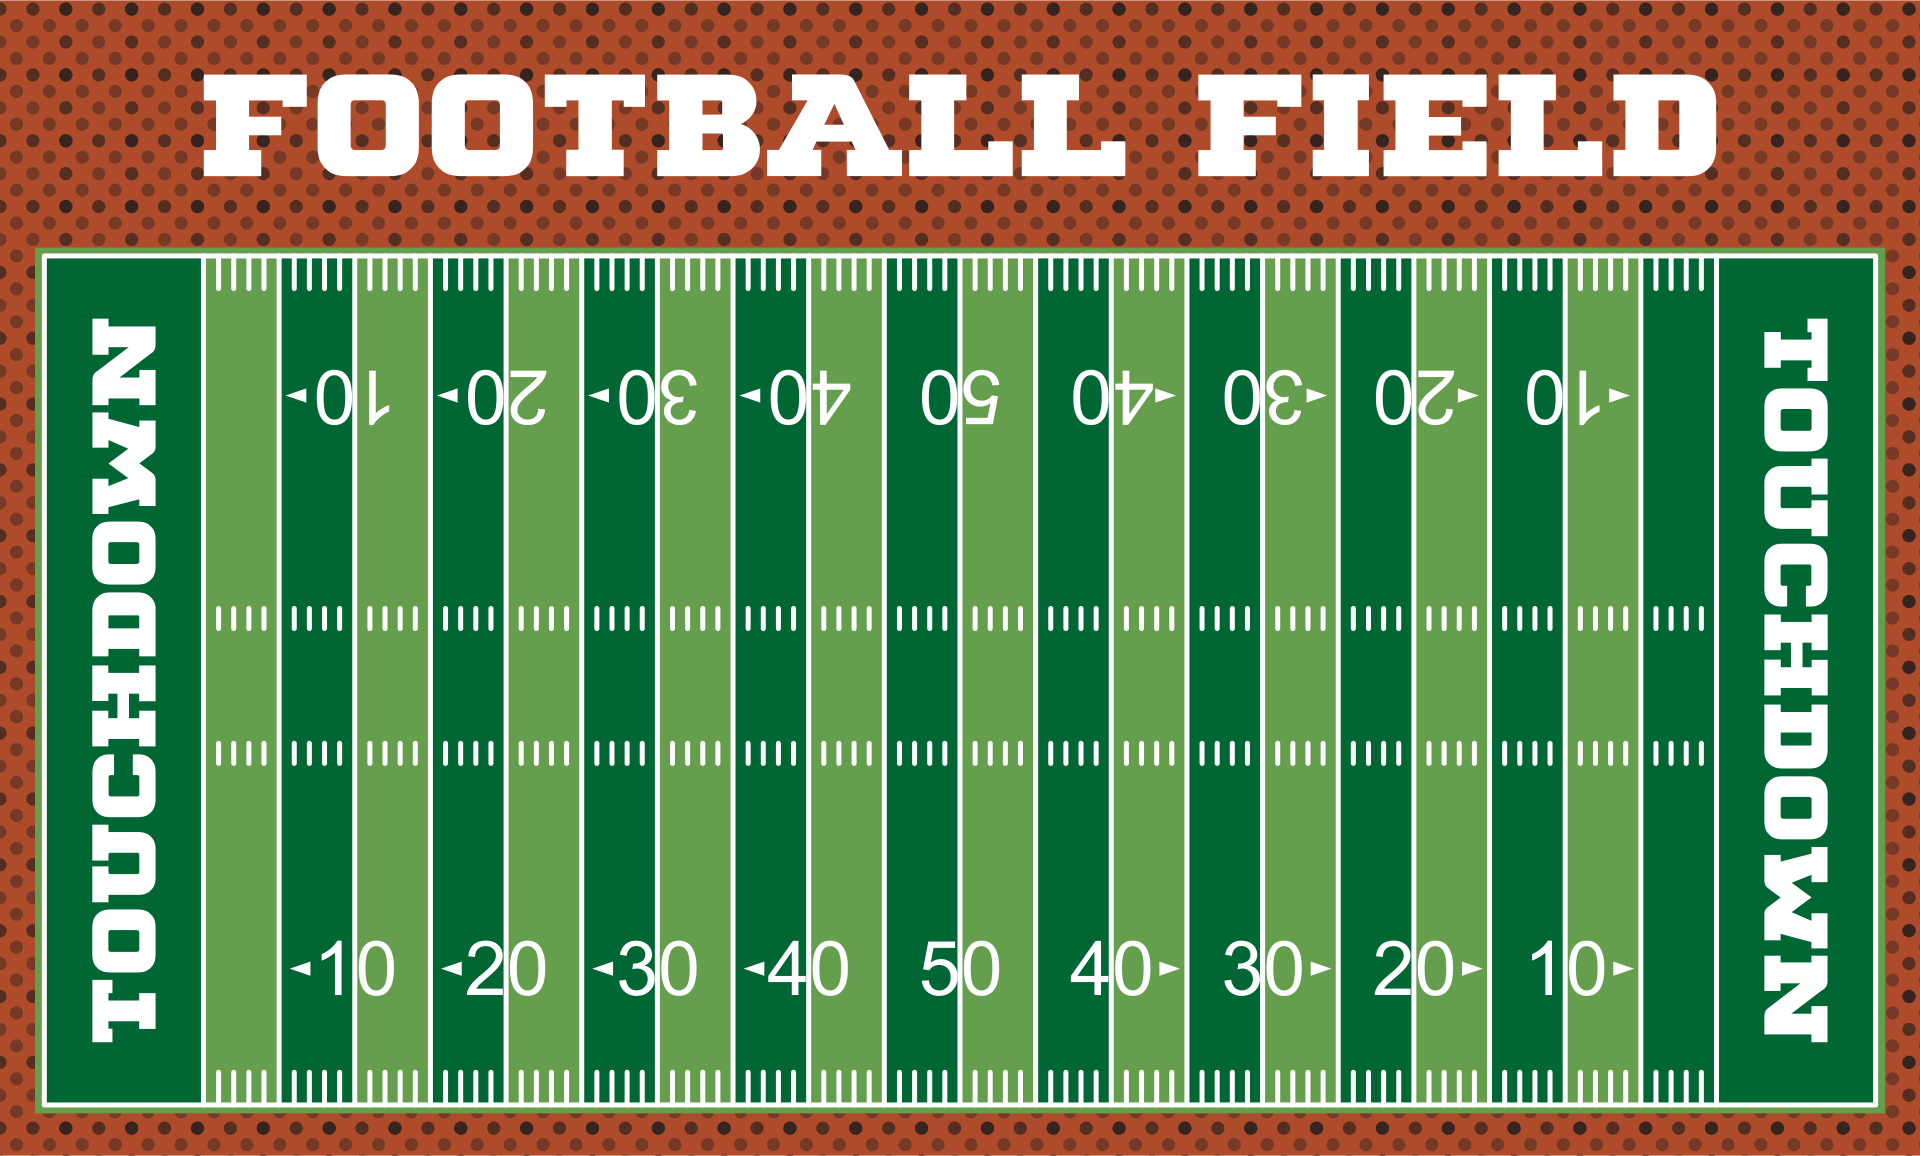 Football Field Printable Image - Printable Blank World